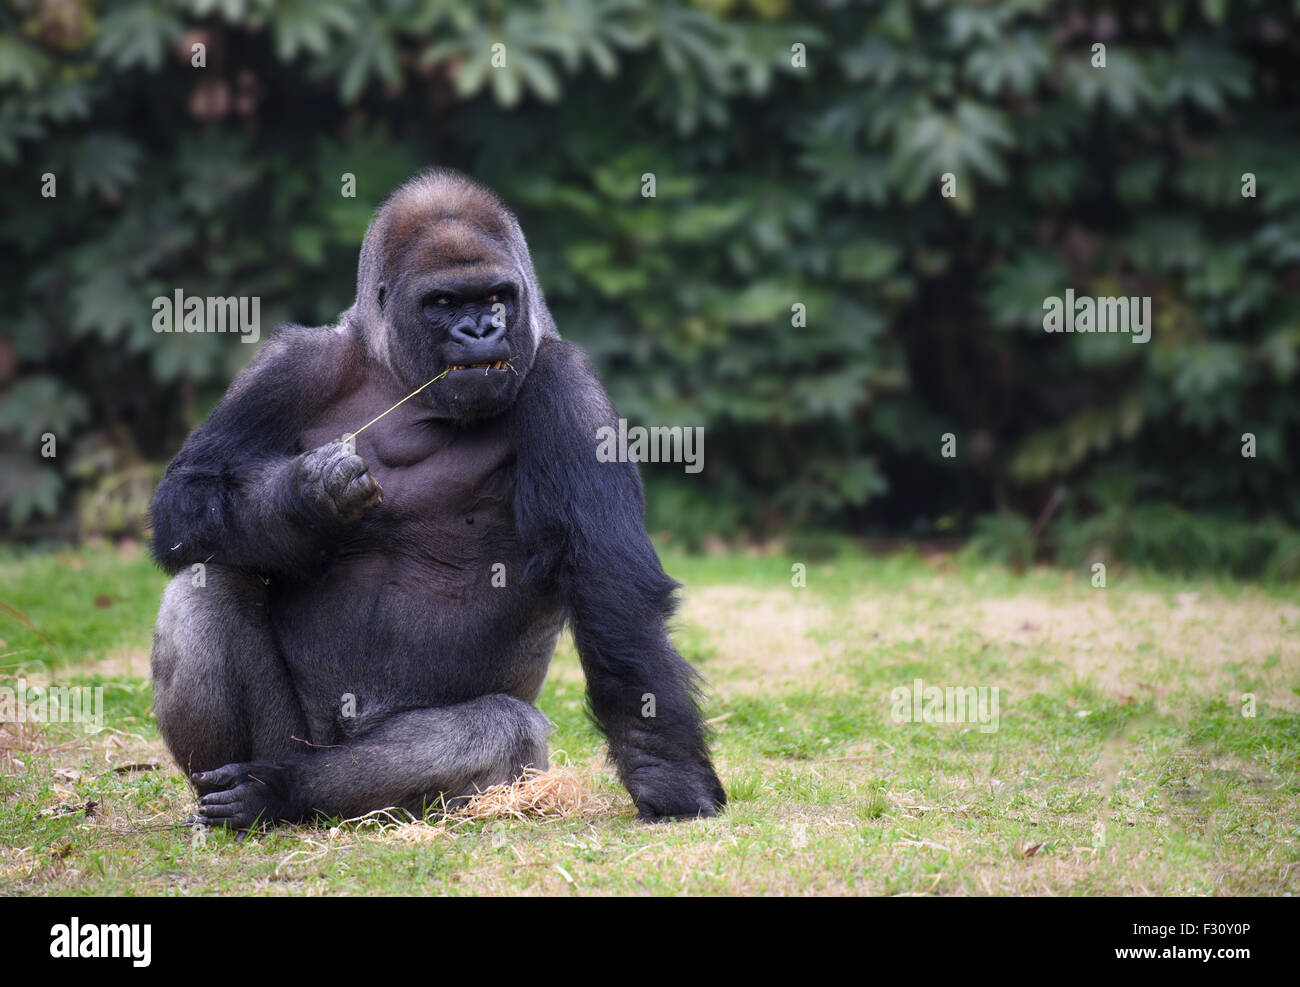 Gorilla avec expression sombre assis sur une herbe Banque D'Images